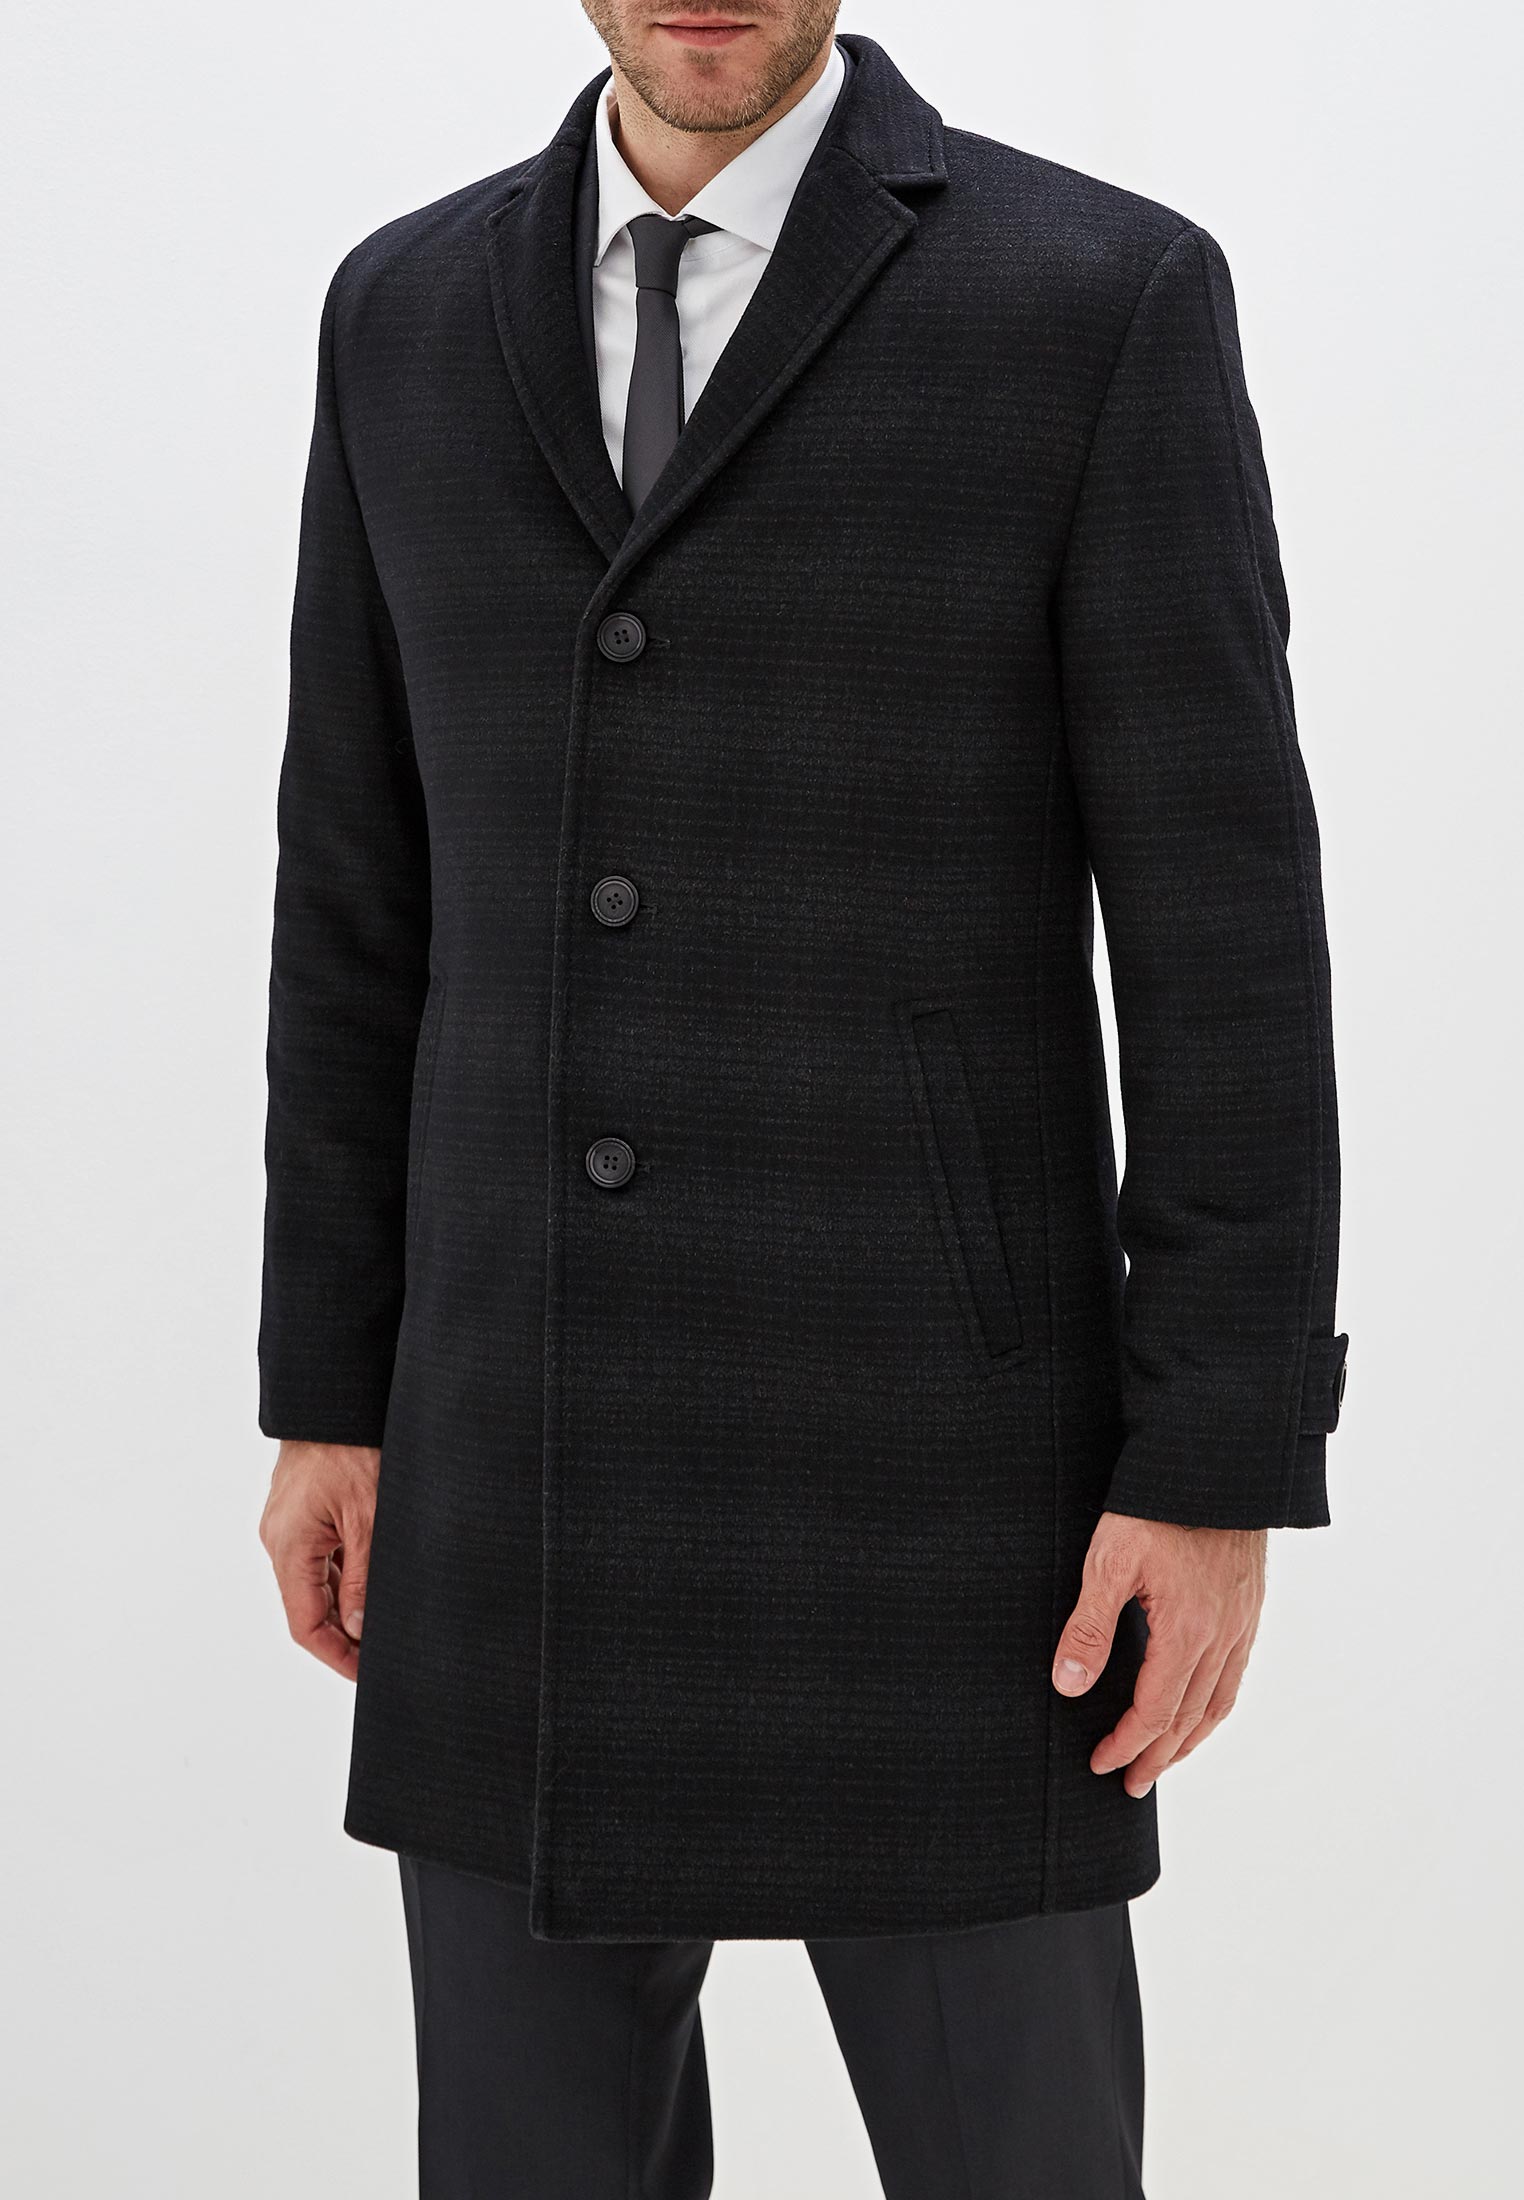 Мужские пальто купить недорого. Мужские пальто Абсолютекс. Пальто мужское ABSOLUTEX Exclusive модель 790кру. ABSOLUTEX пальто мужское. ABSOLUTEX Exclusive пальто мужское.